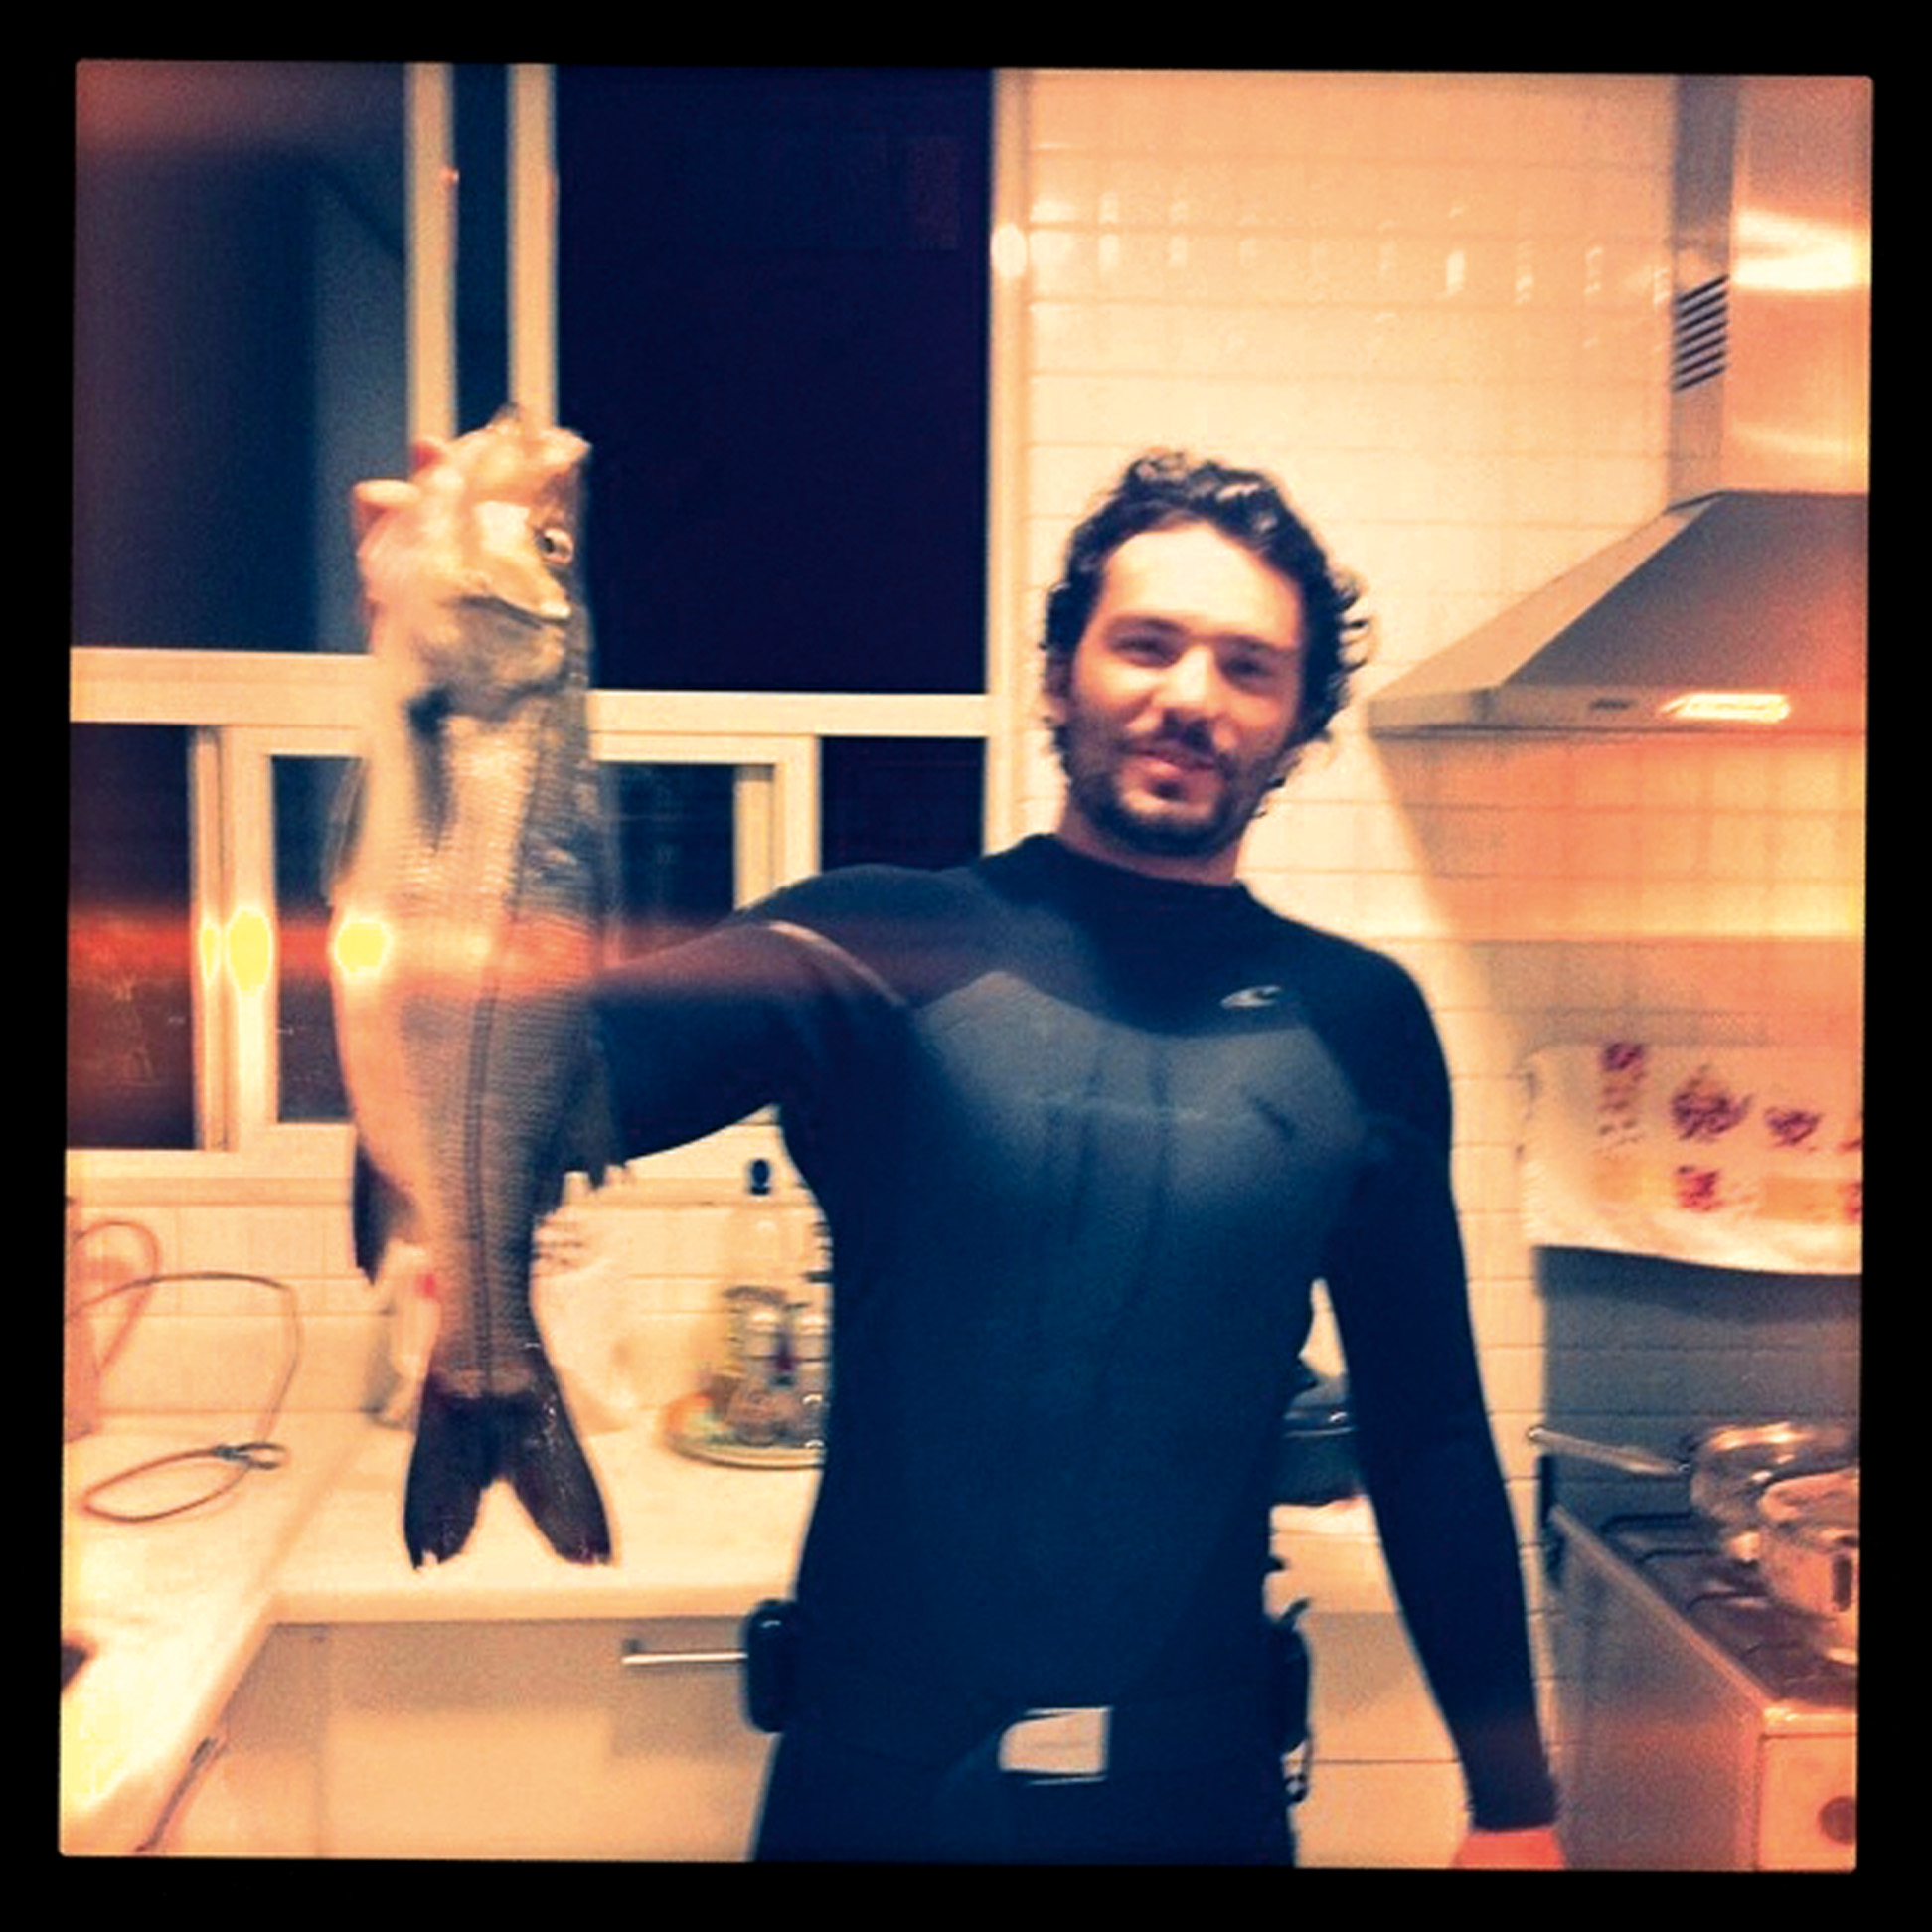 17:30 - “Ele volta para casa com meu peixe preferido: o robalo